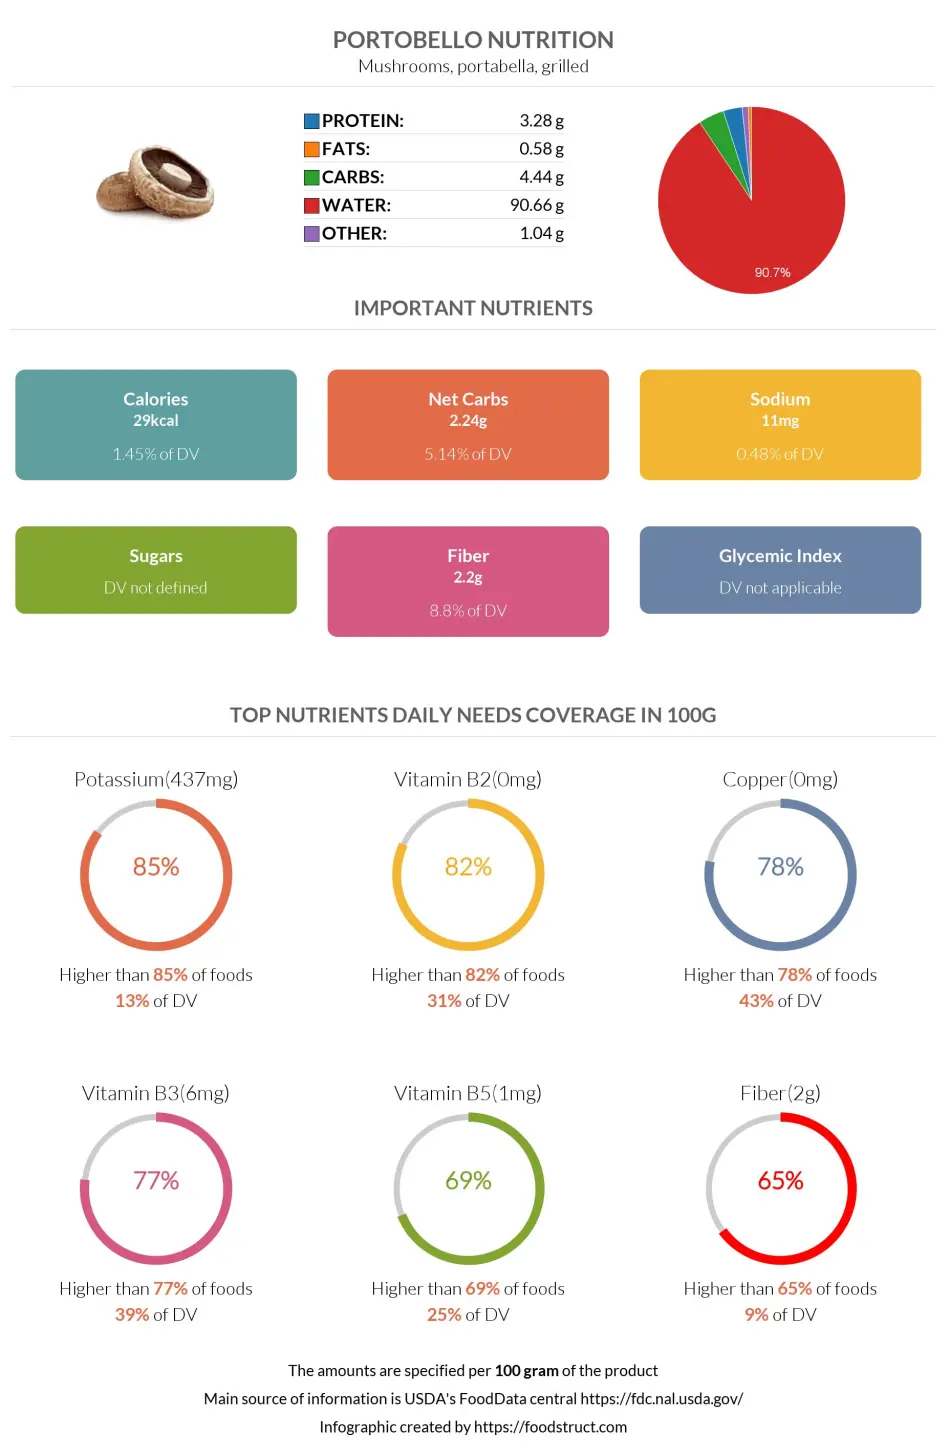 Portobello nutrition infographic